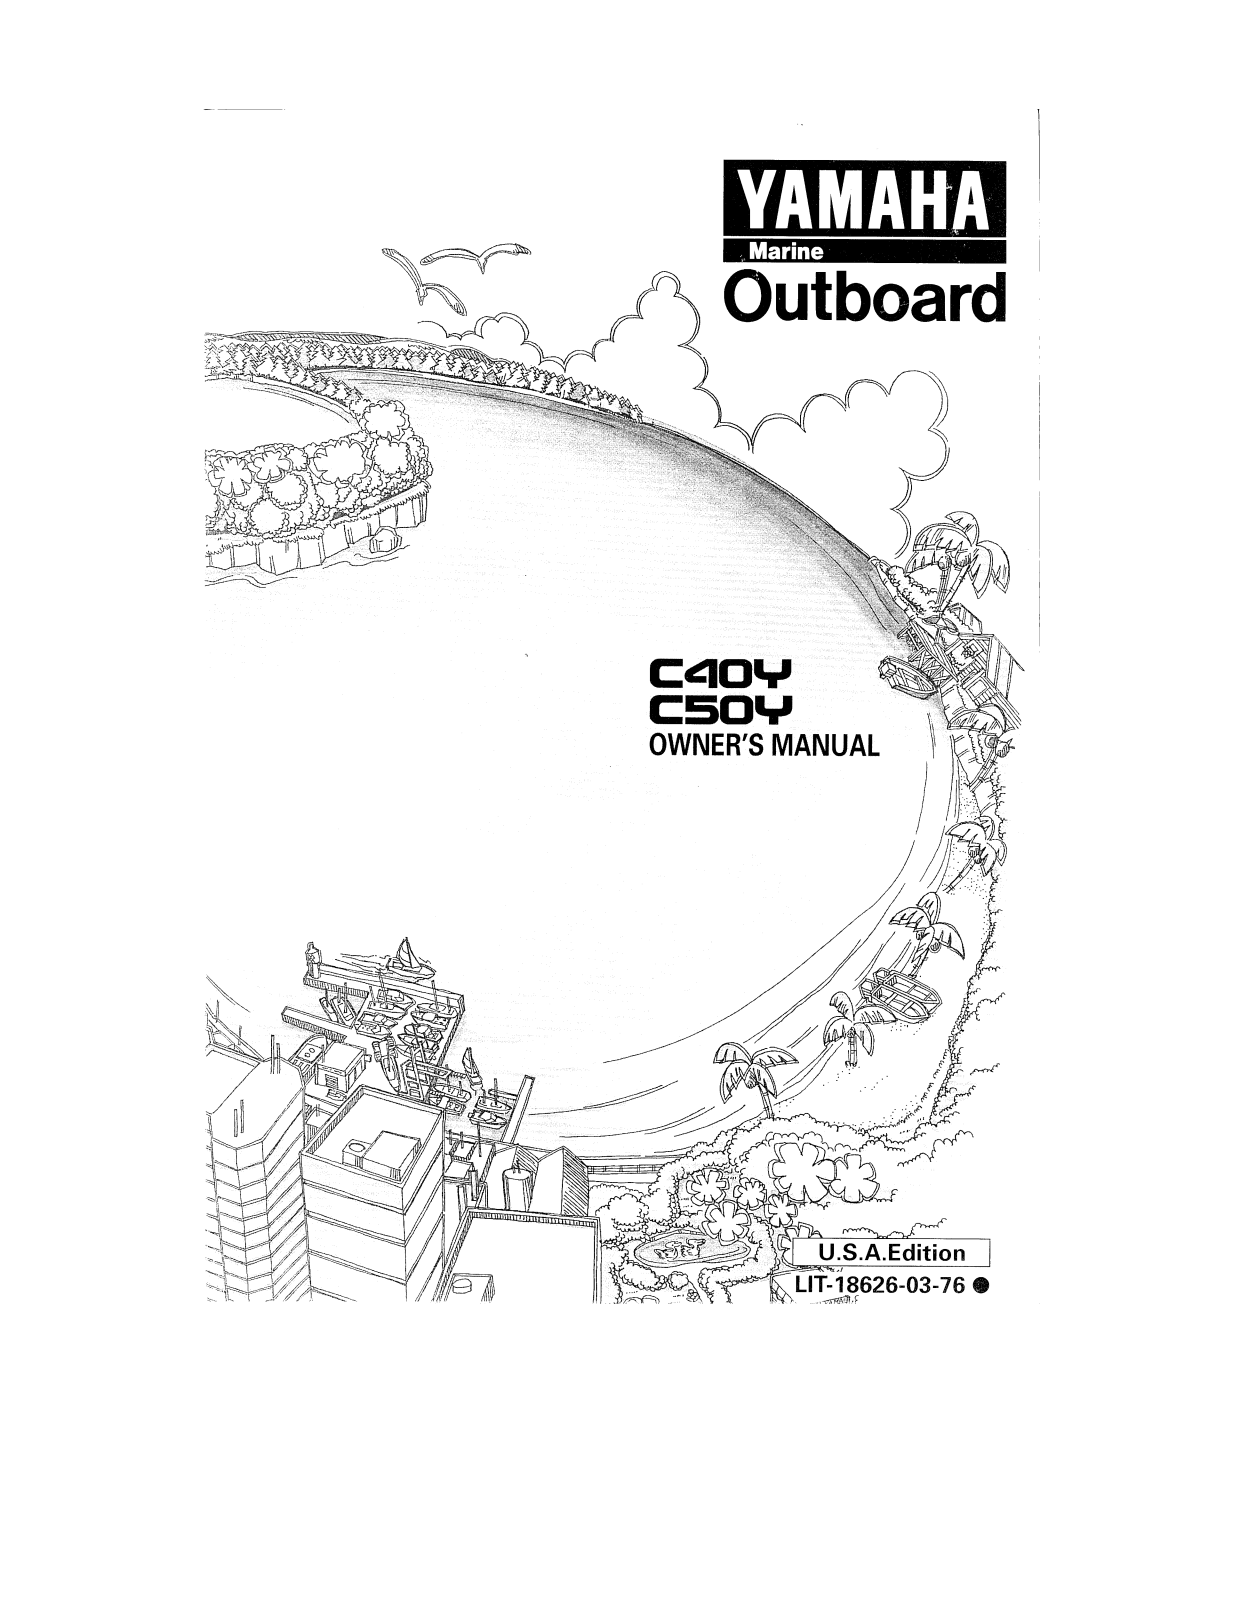 Yamaha C40Y, C50Y User Manual